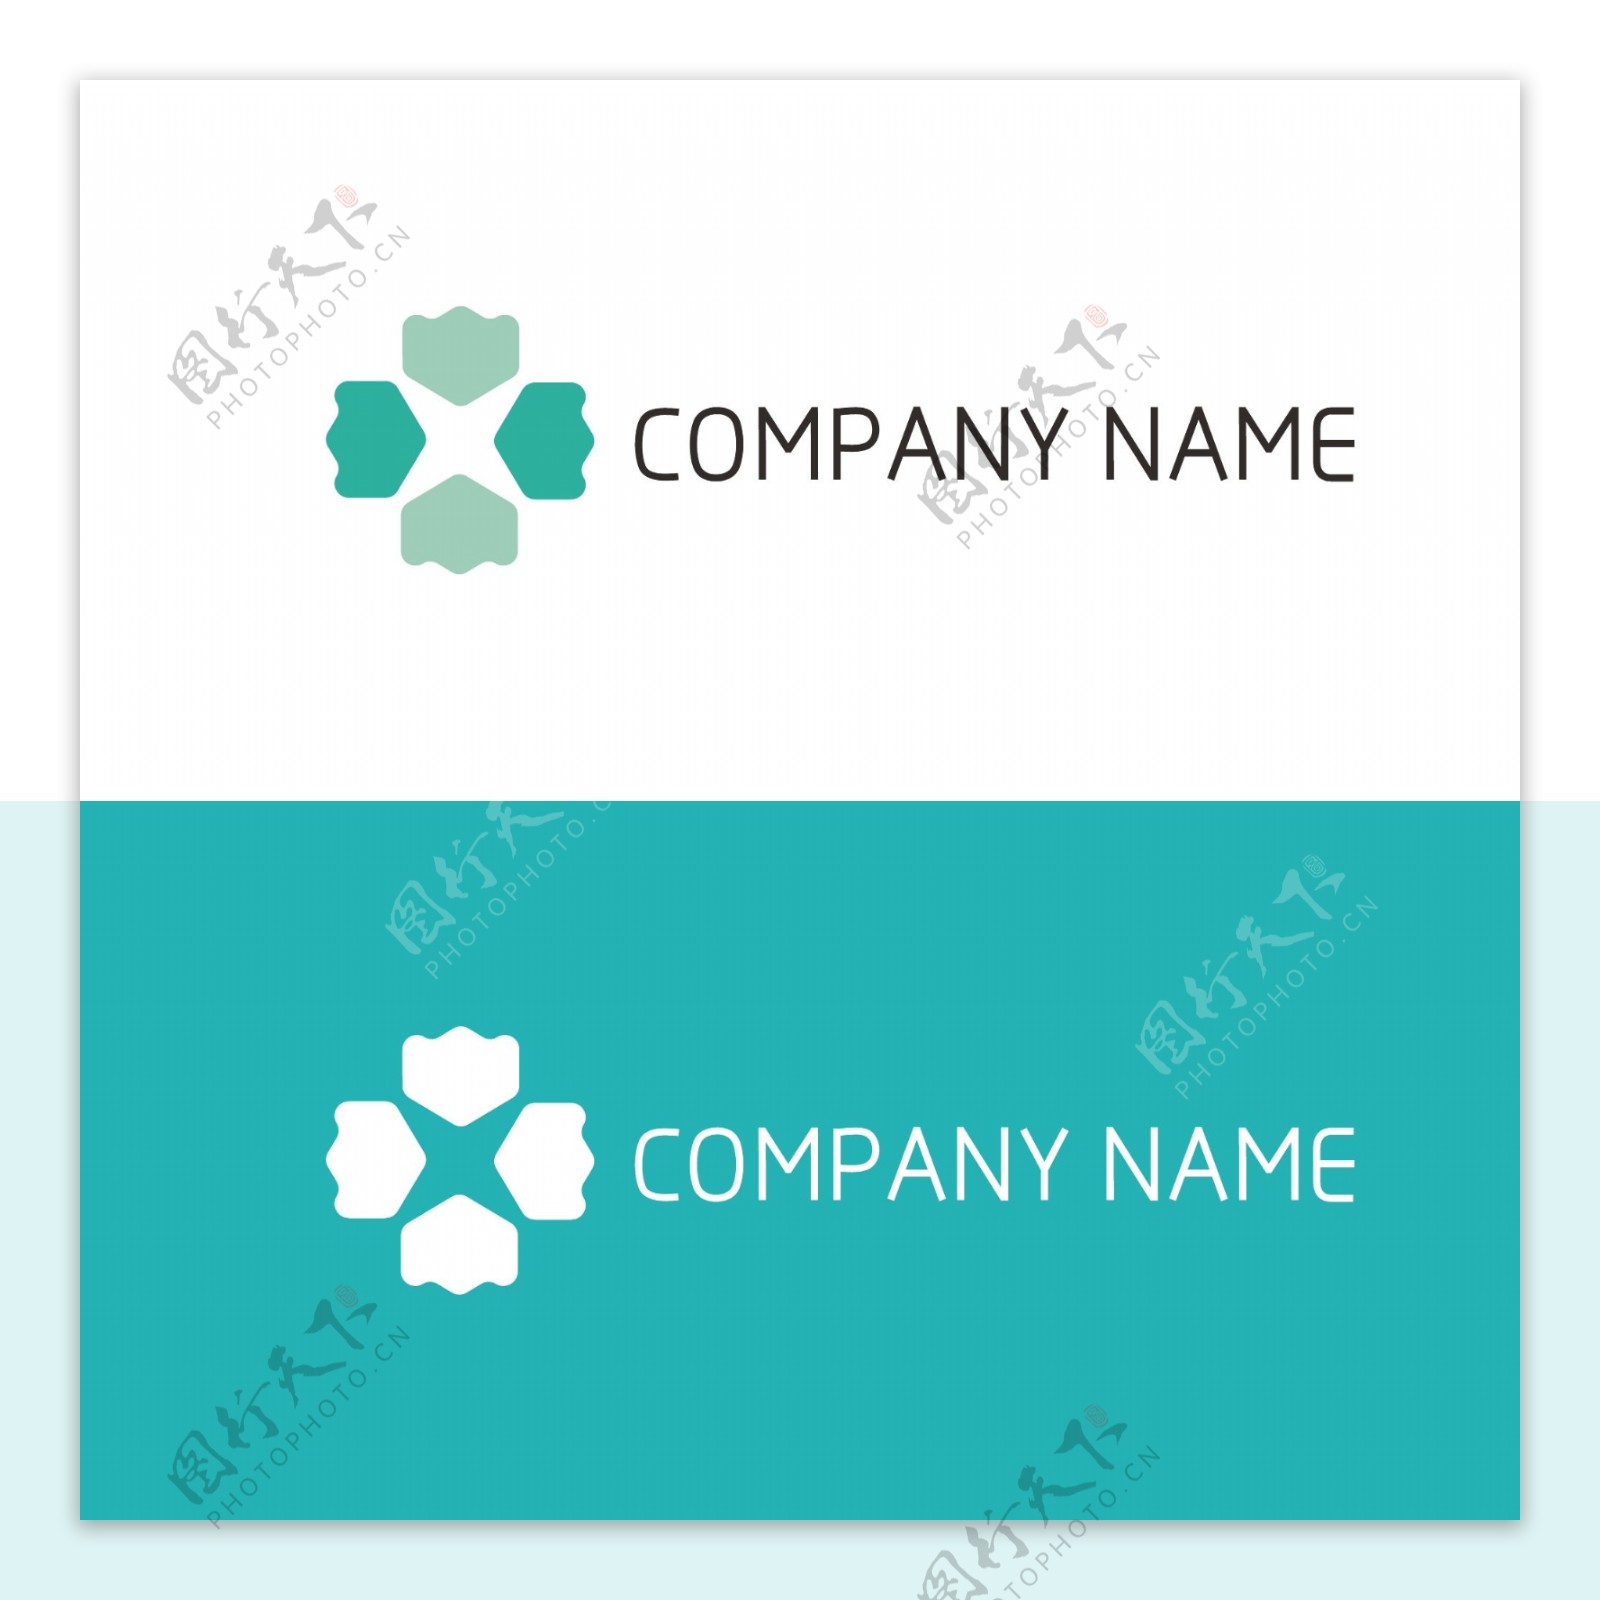 企业扁平化商标logo